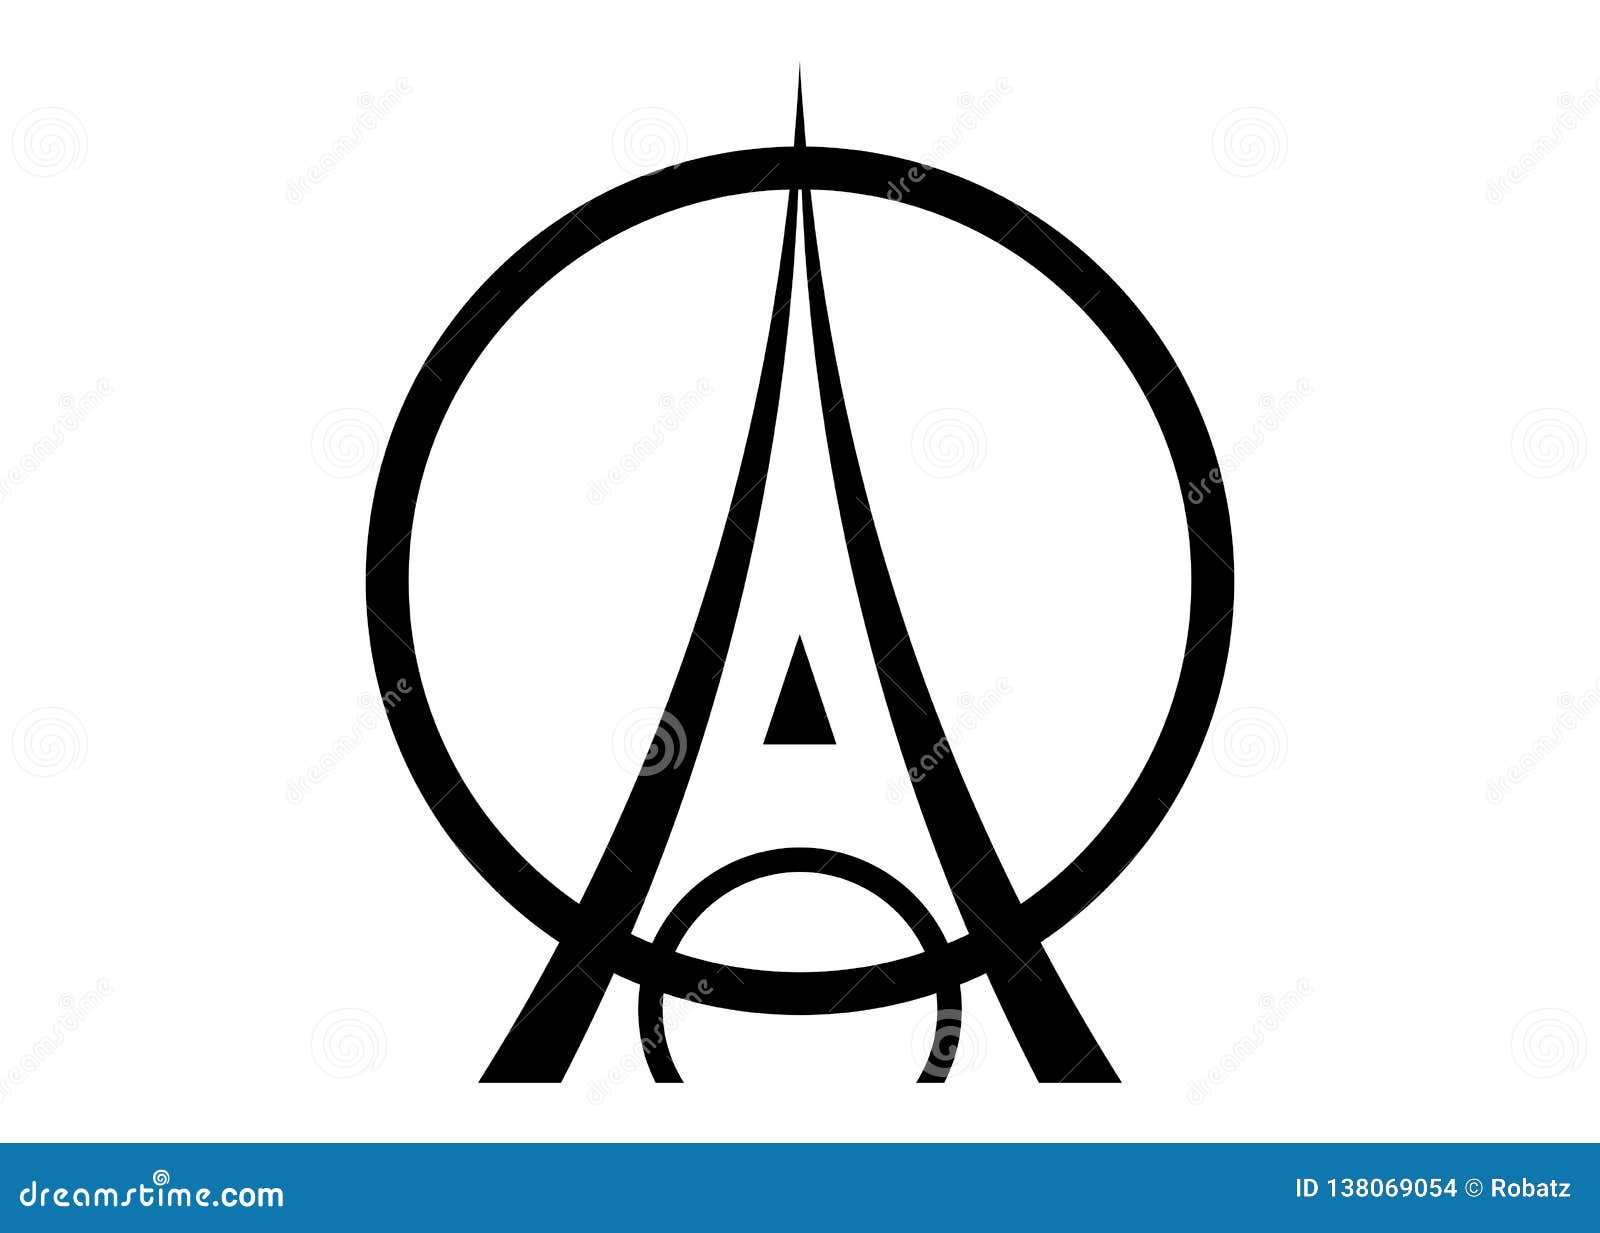 Как называют знак французы. Вектор лого башня. Paris symbol. Башня логотип.